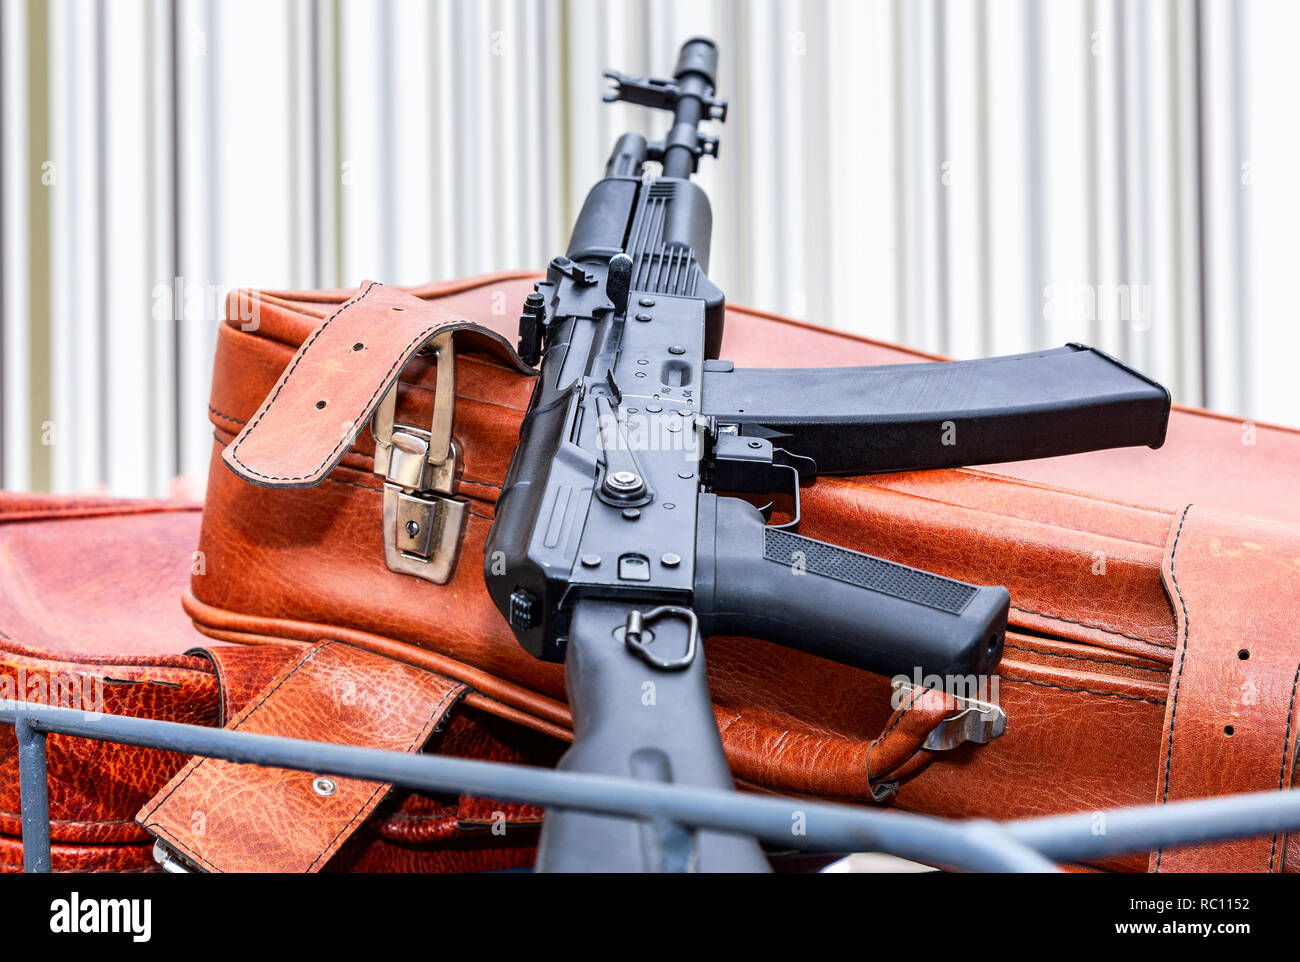 Kalashnikov ak-47 and vintage leather travel suitcases Stock Photo